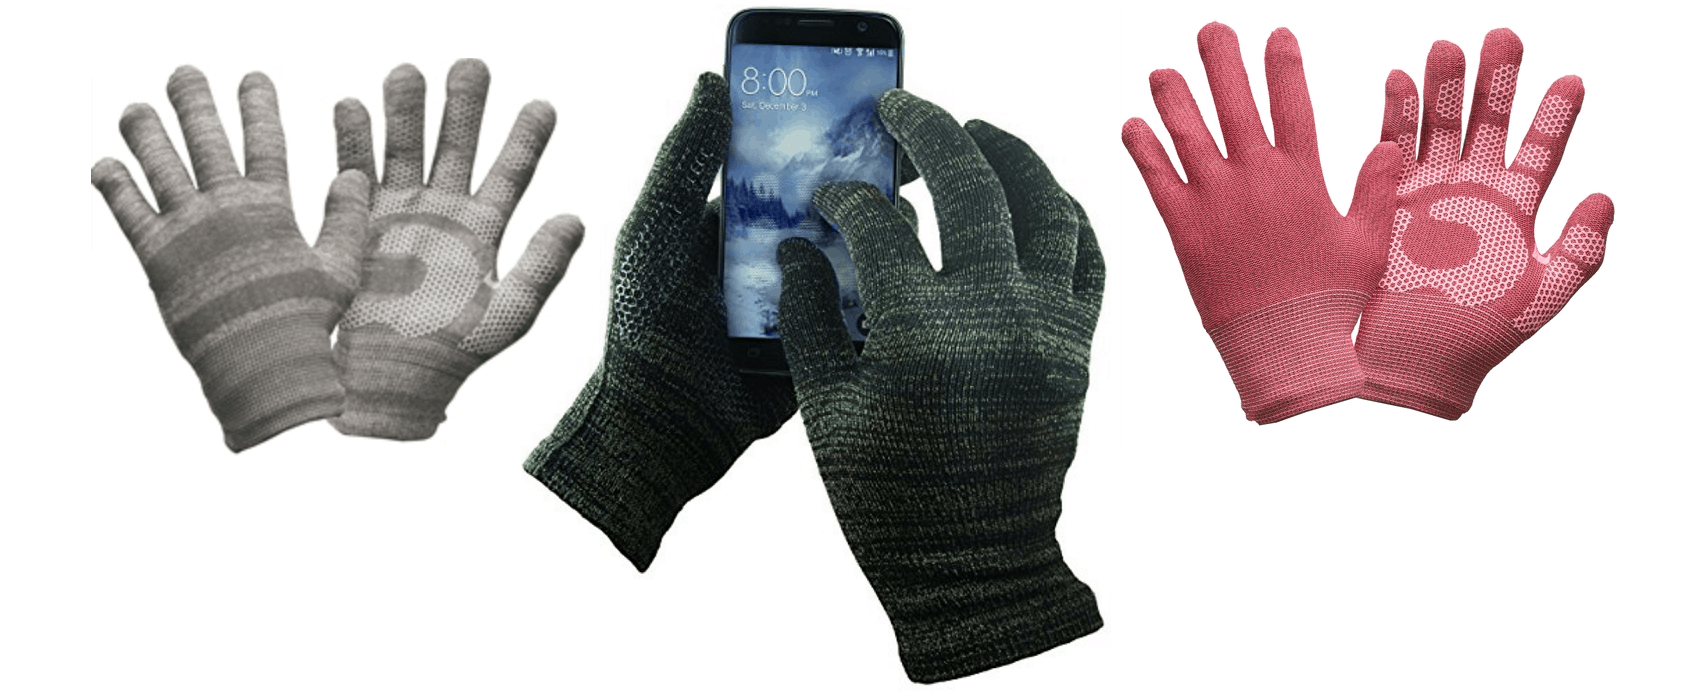 Glider Gloves smartphone friendly